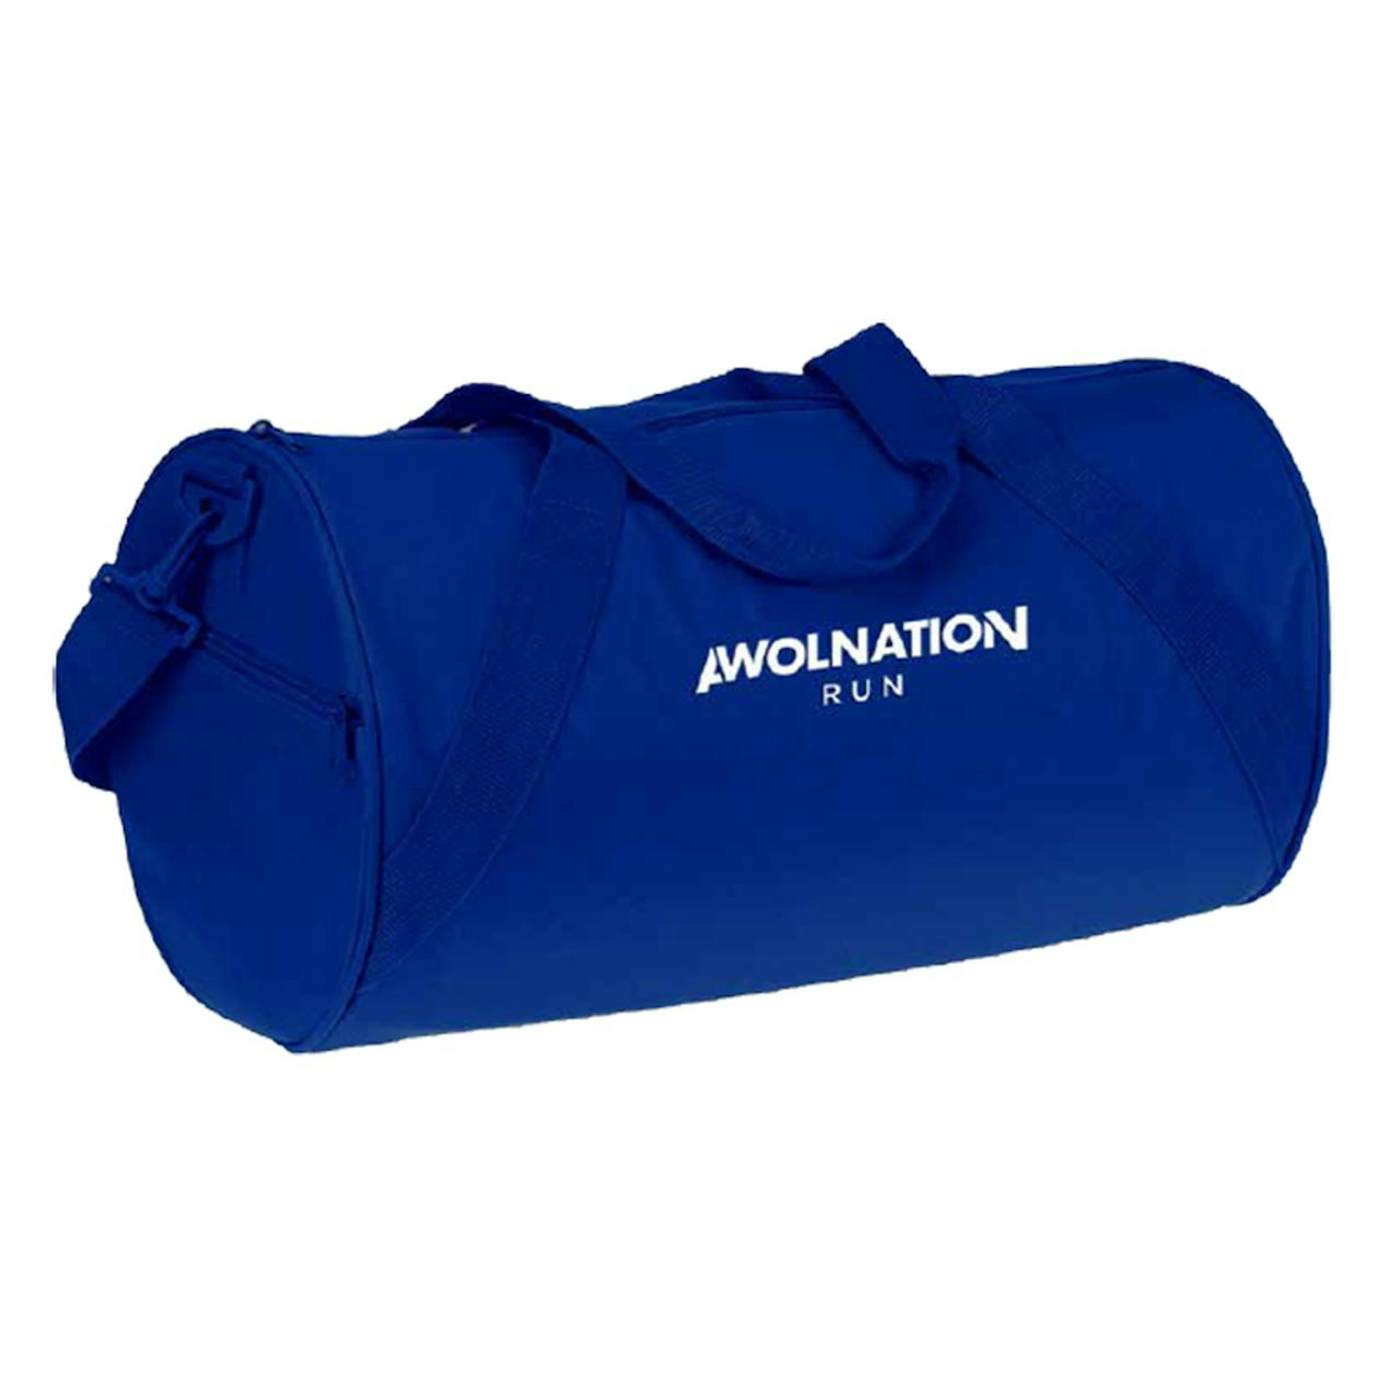 AWOLNATION RUN Gym Bag